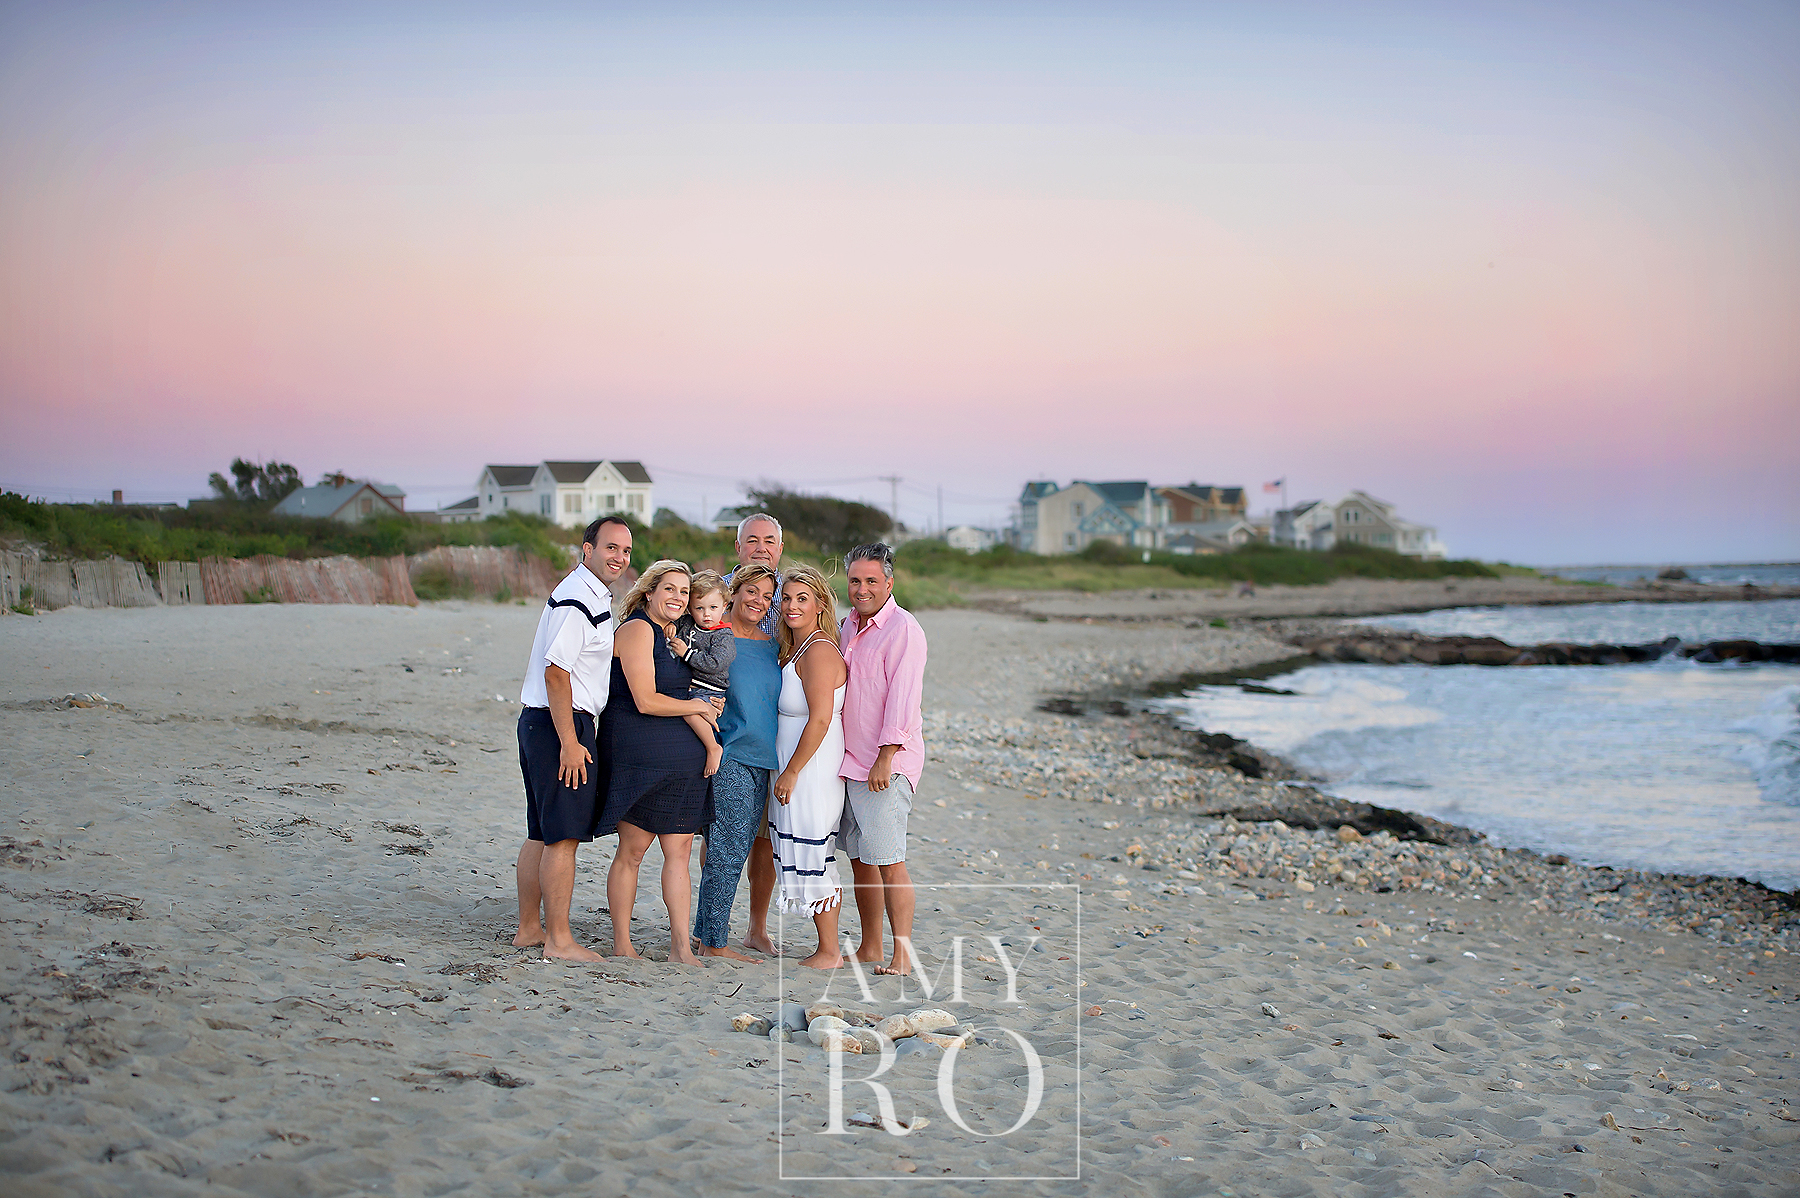 Family portrait taken in Narragansett on the beach